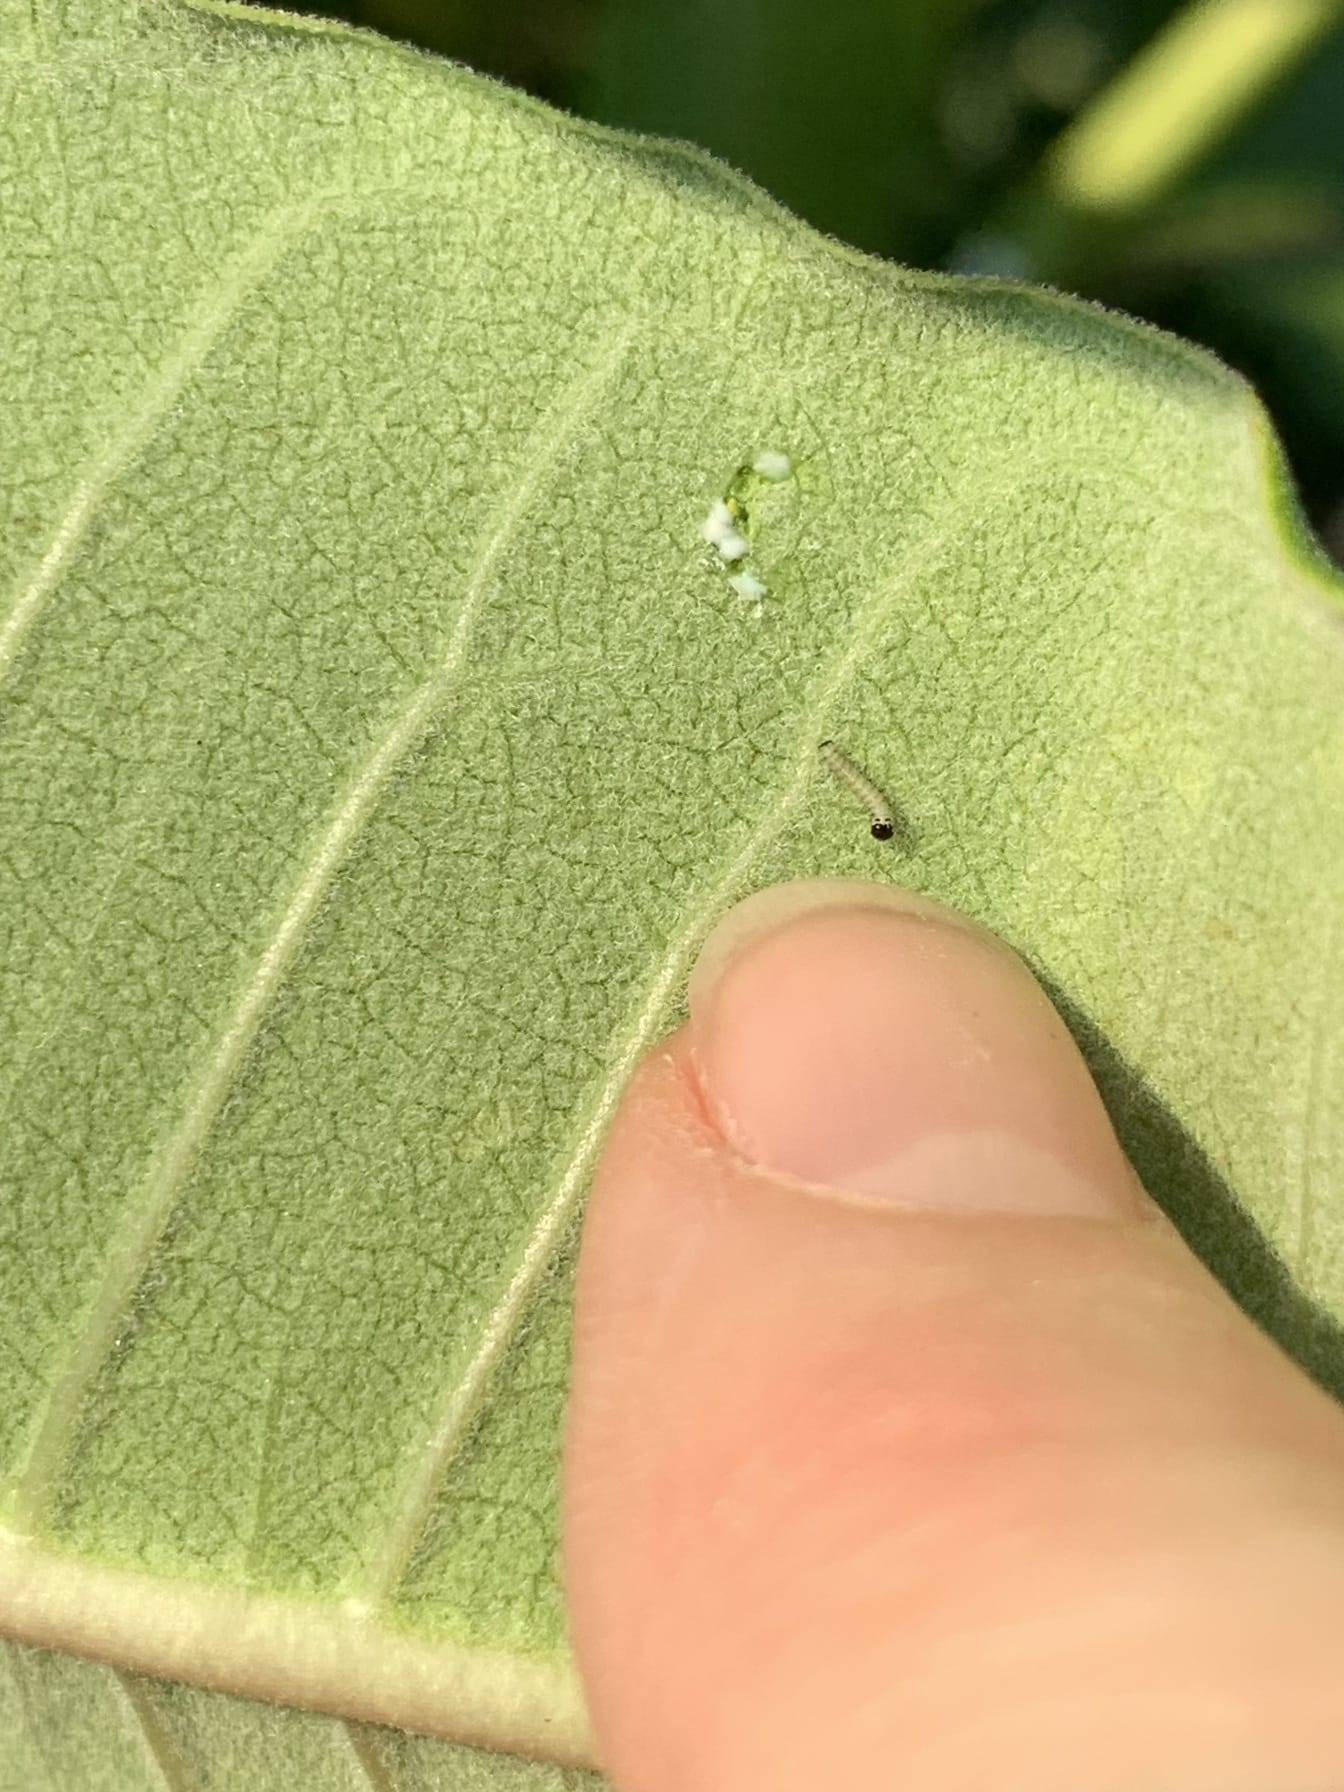 Omidă fluture monarh mică pe planta de lapte nou eclozată